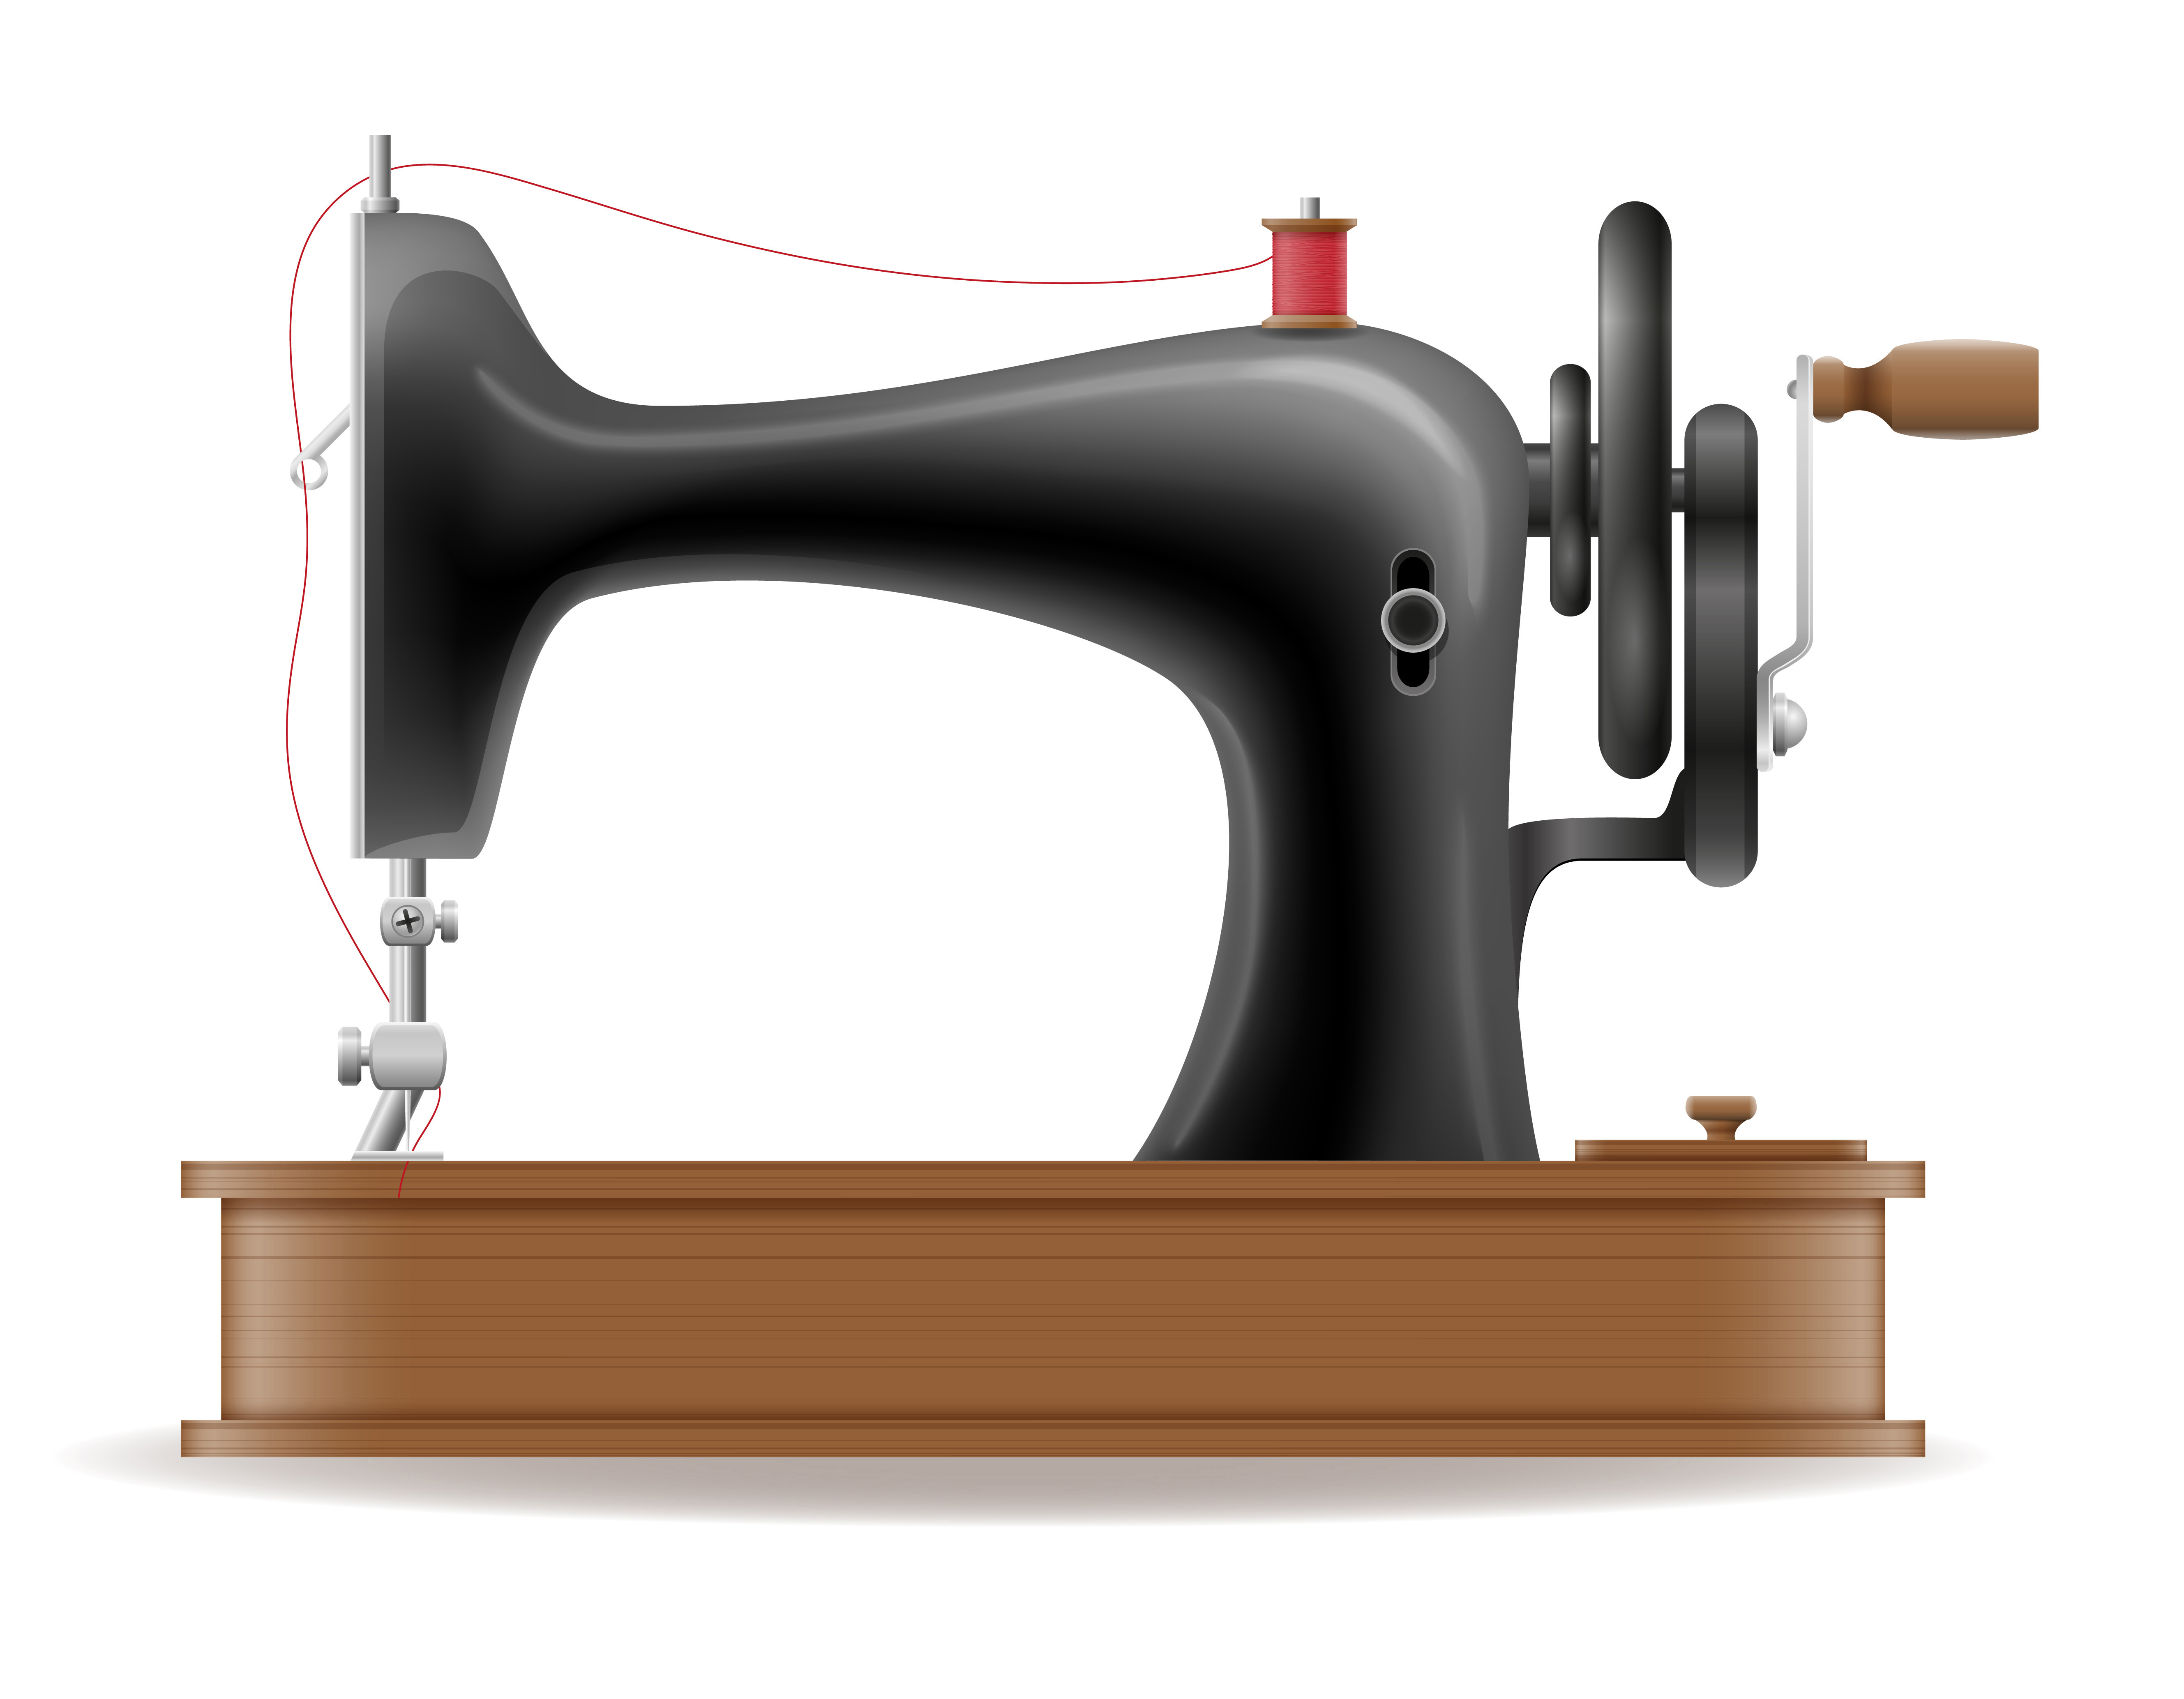 Ilustración de máquina de coser vintage con texto